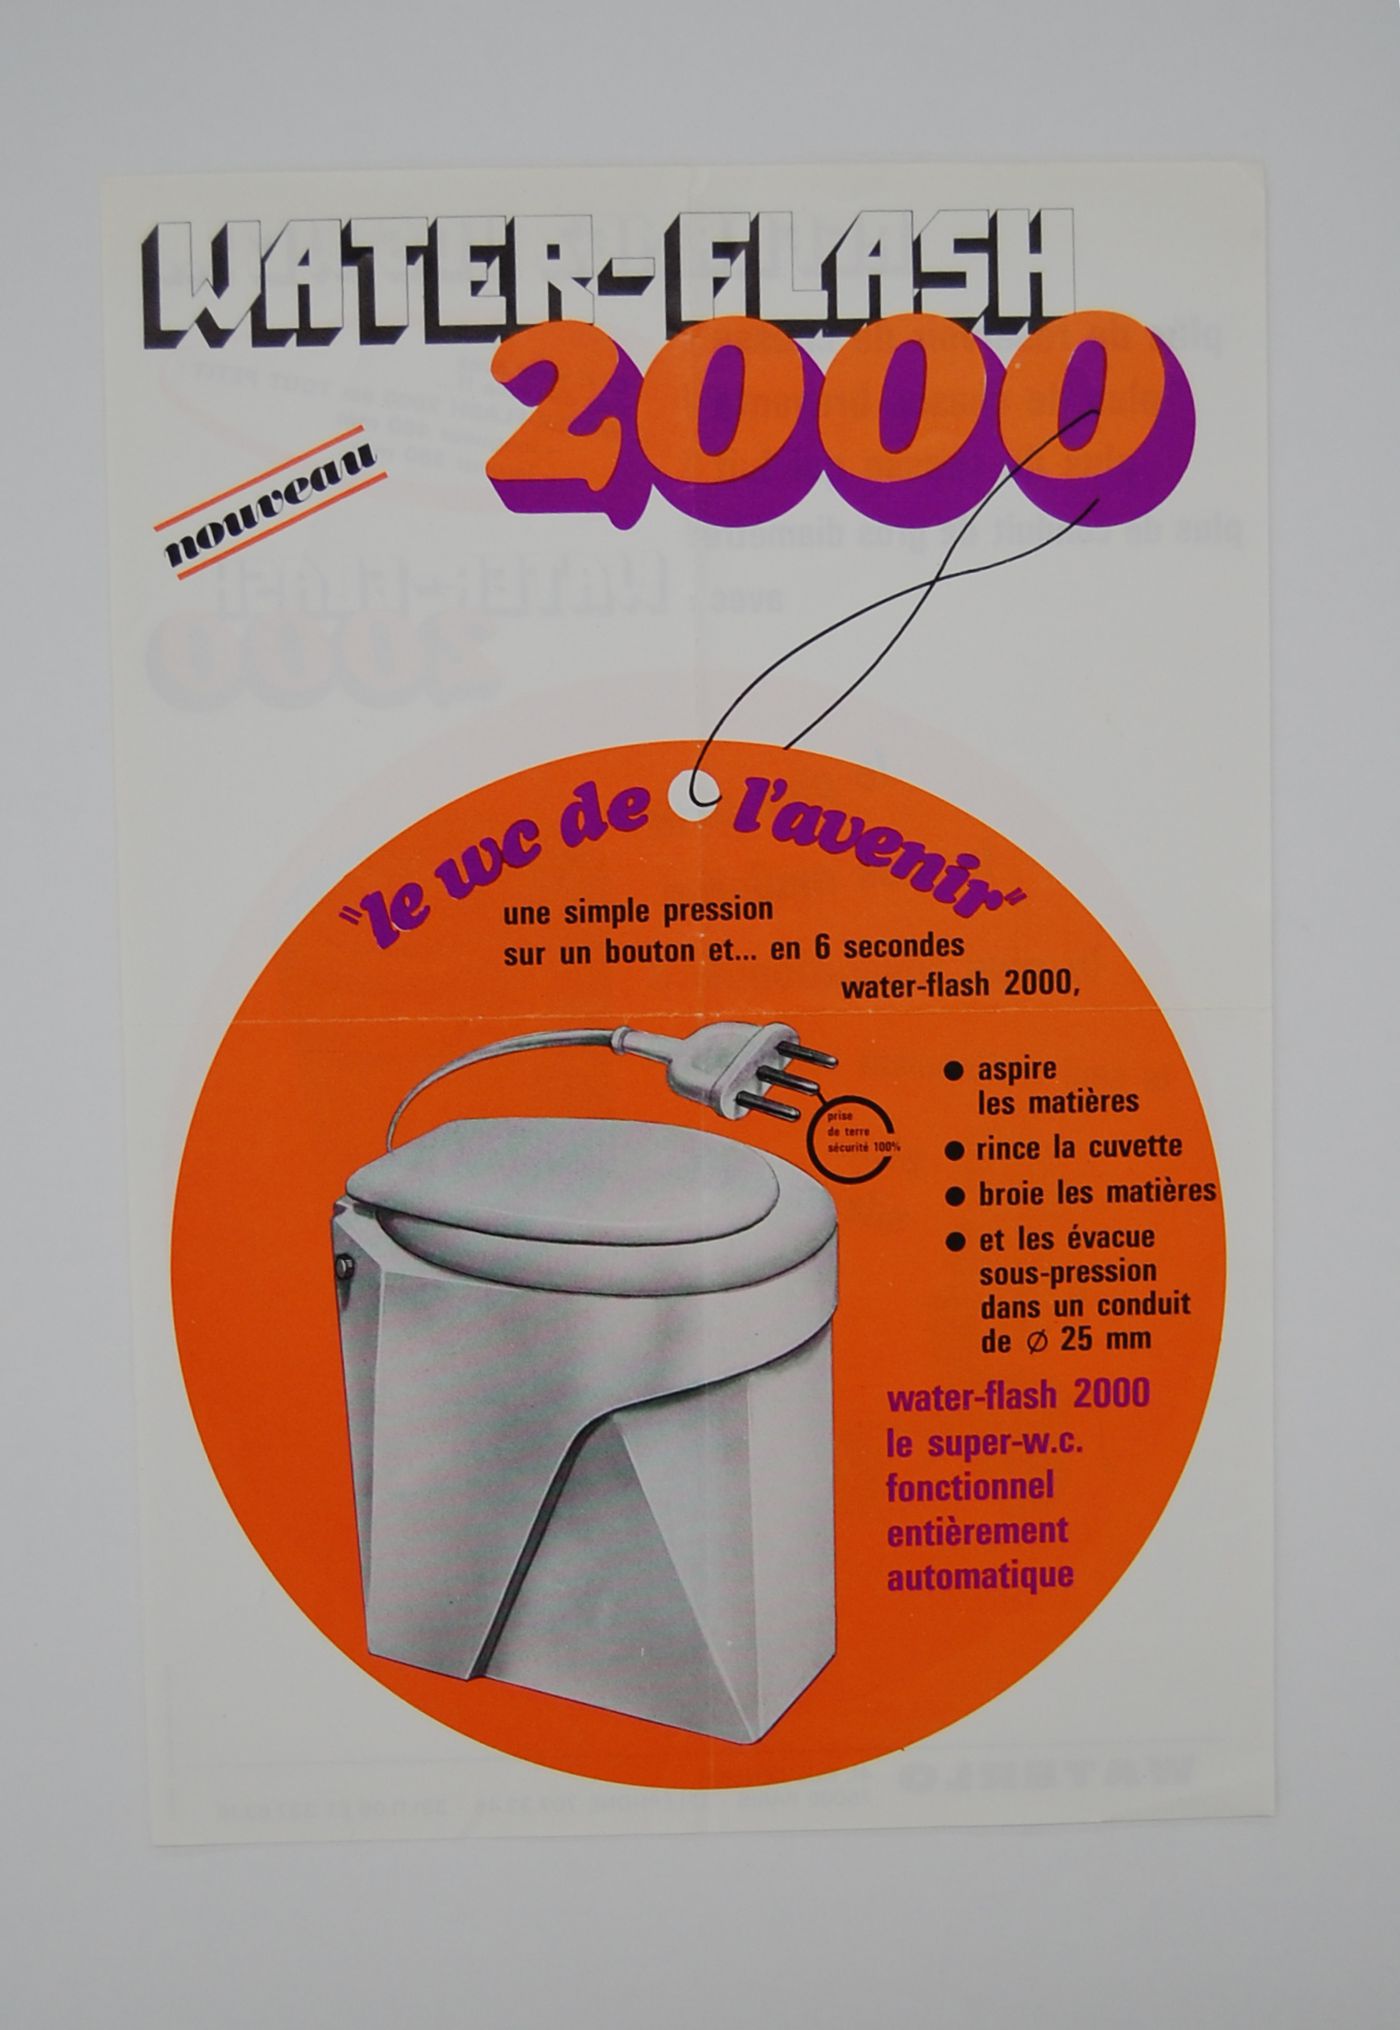 Water-flash 2000 : le wc de l'avenir